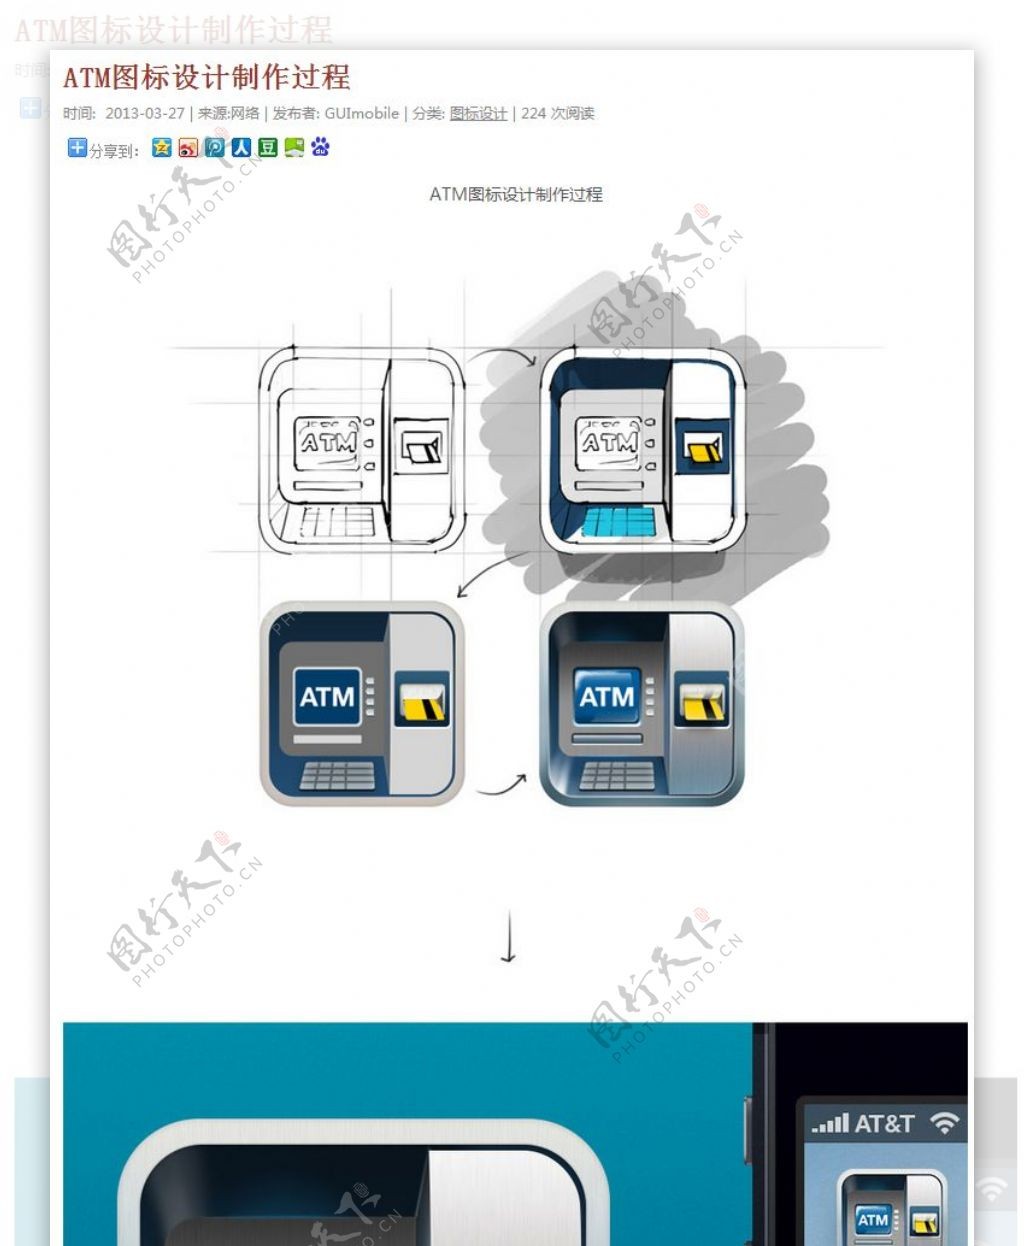 ATM图标设计制作过程手机界面设计手机UI设计手机图标设计UI设计教程GUImobile莫贝网